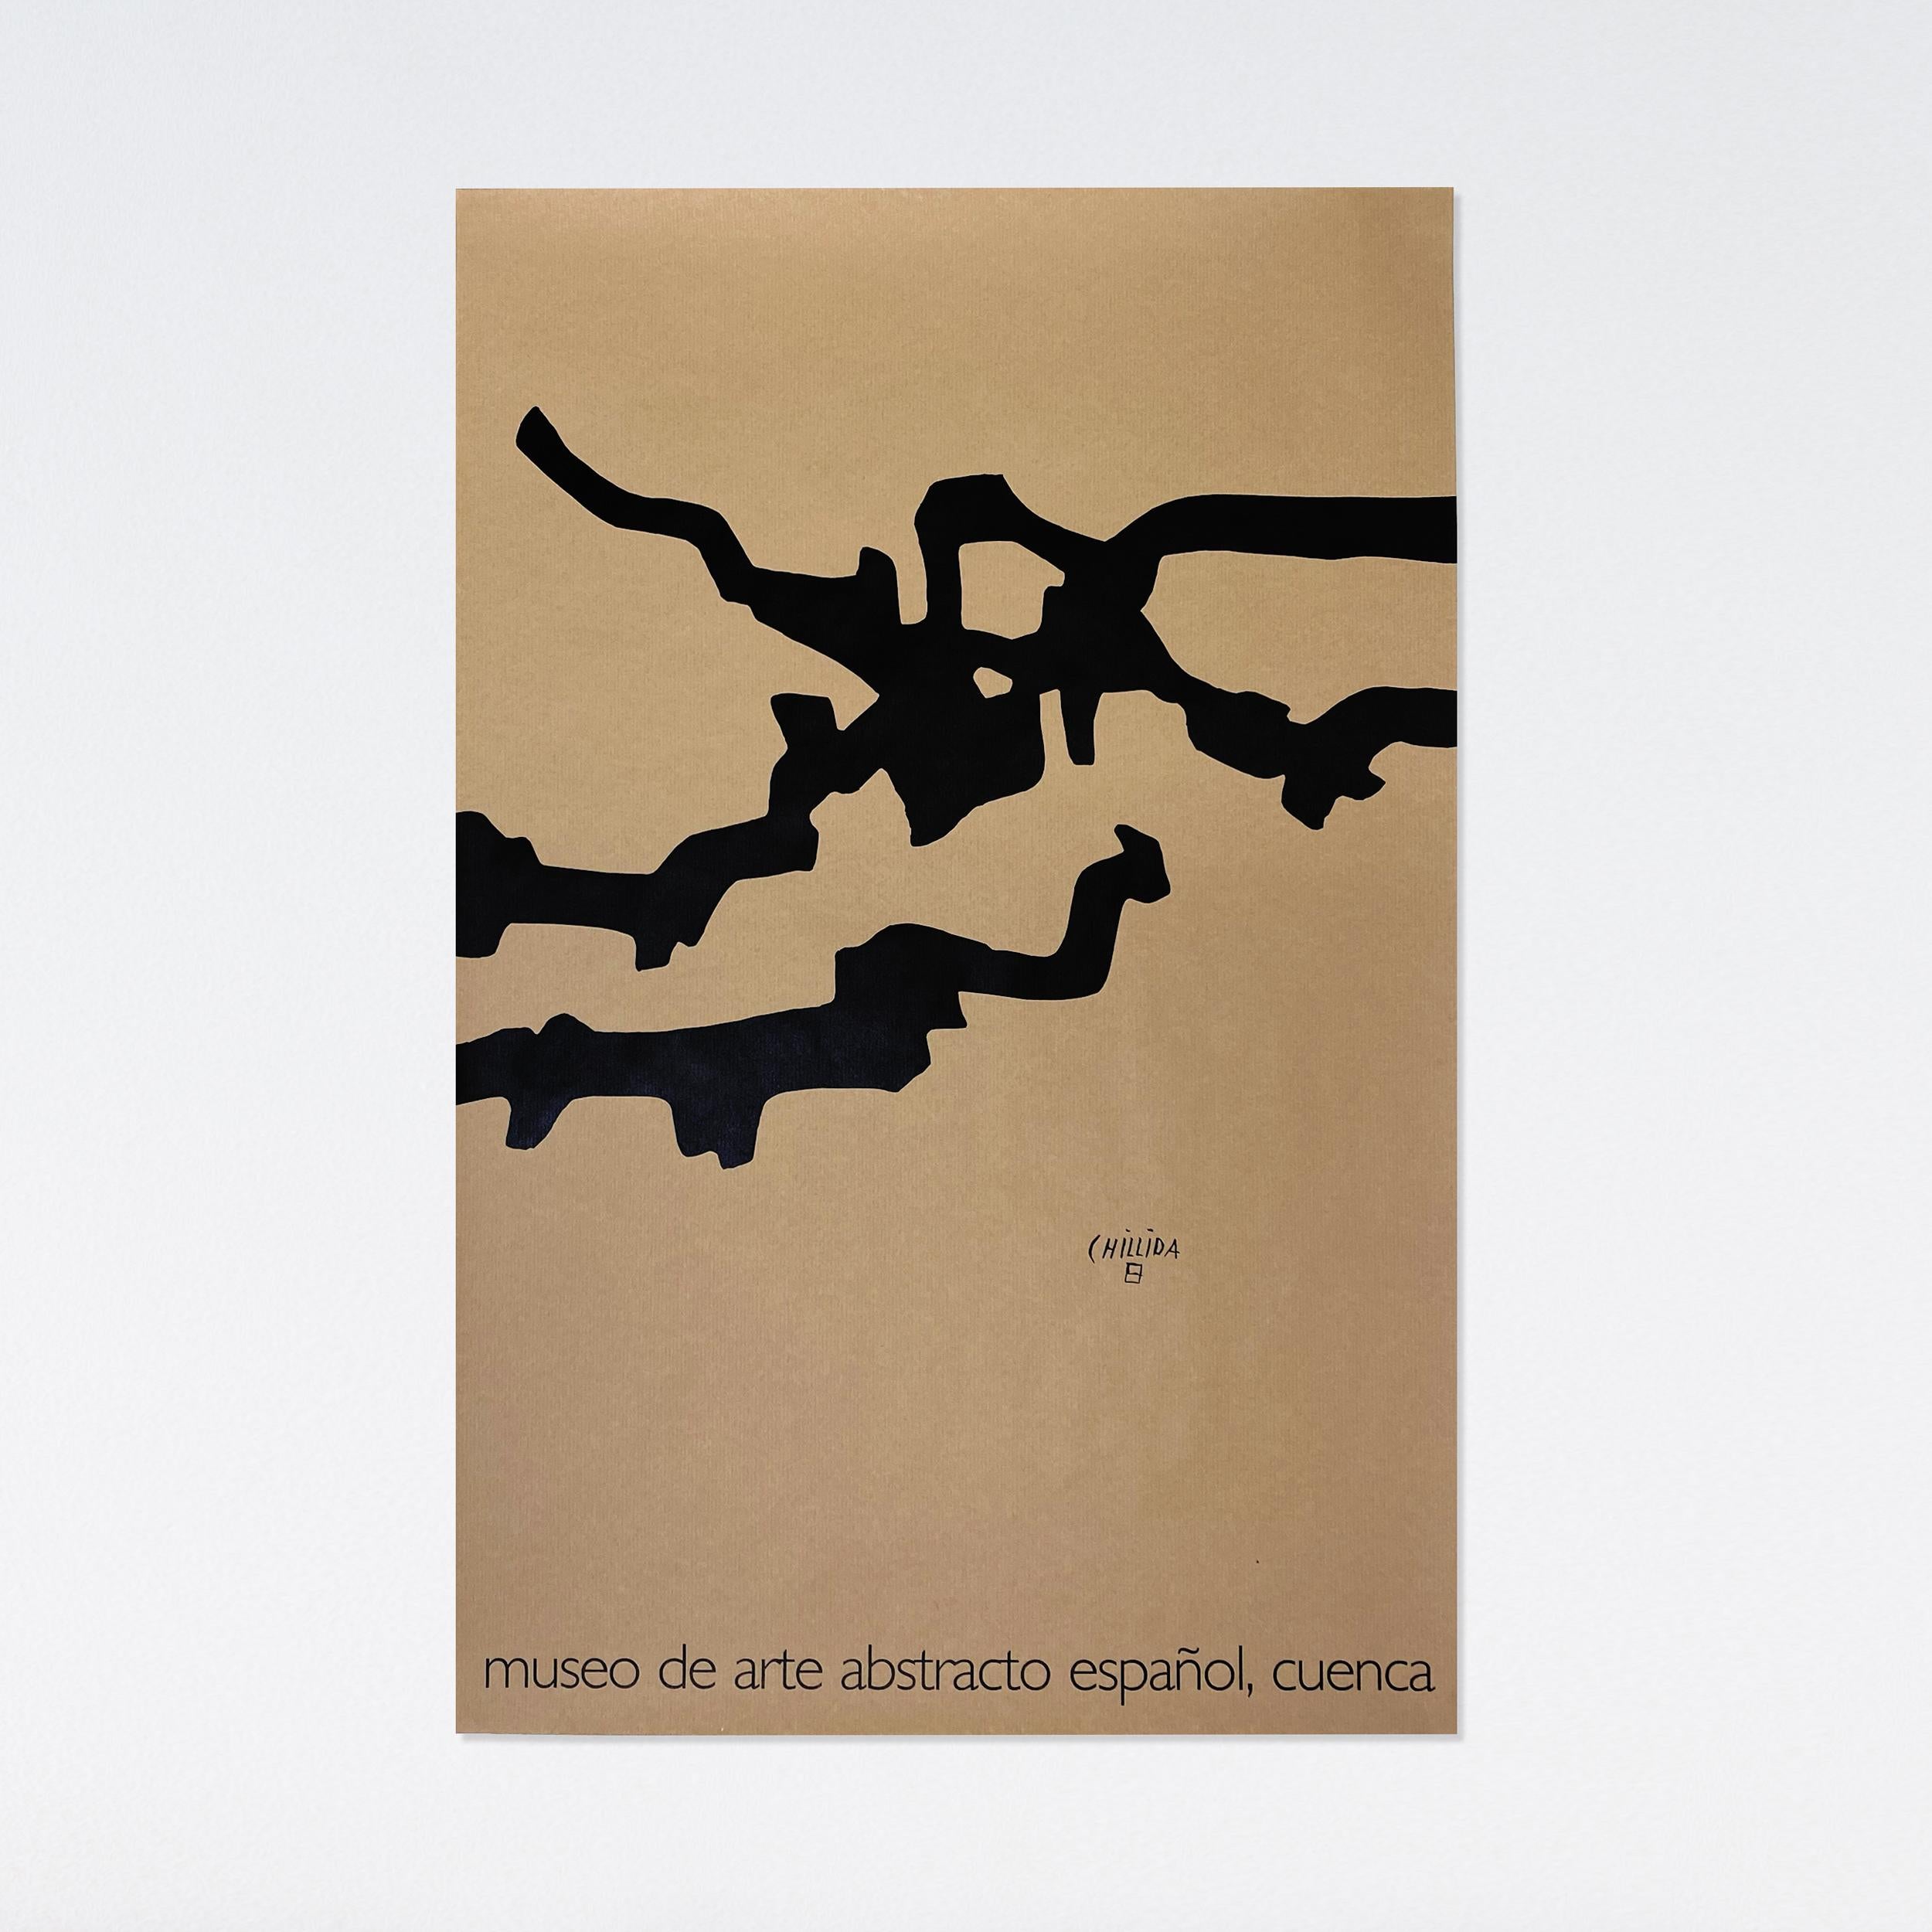 Eduardo Chillida, Mármol y plomo (Marble and lead), 2004 Lithographic poster 1